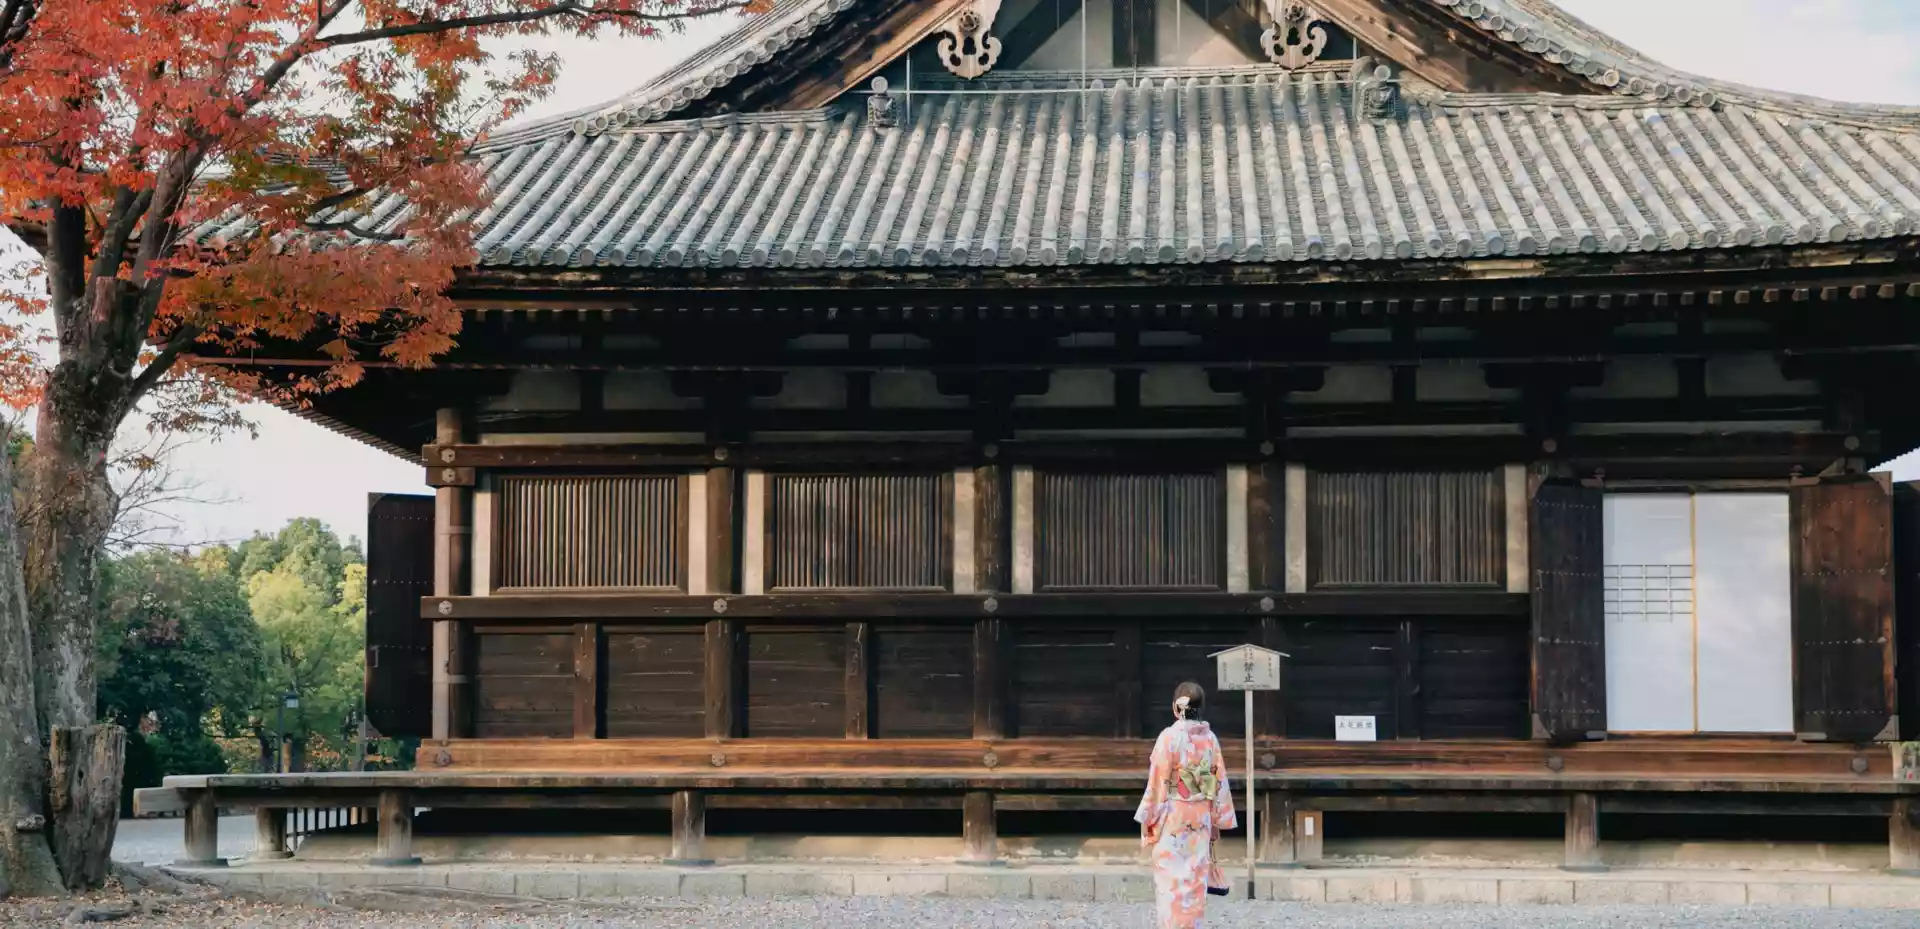 Et hus i Kyoto i tradisjonell japansk stil. På den åpne plassen foran huset står en kvinne med rygge til, kledd i tradisjonell japansk drakt.